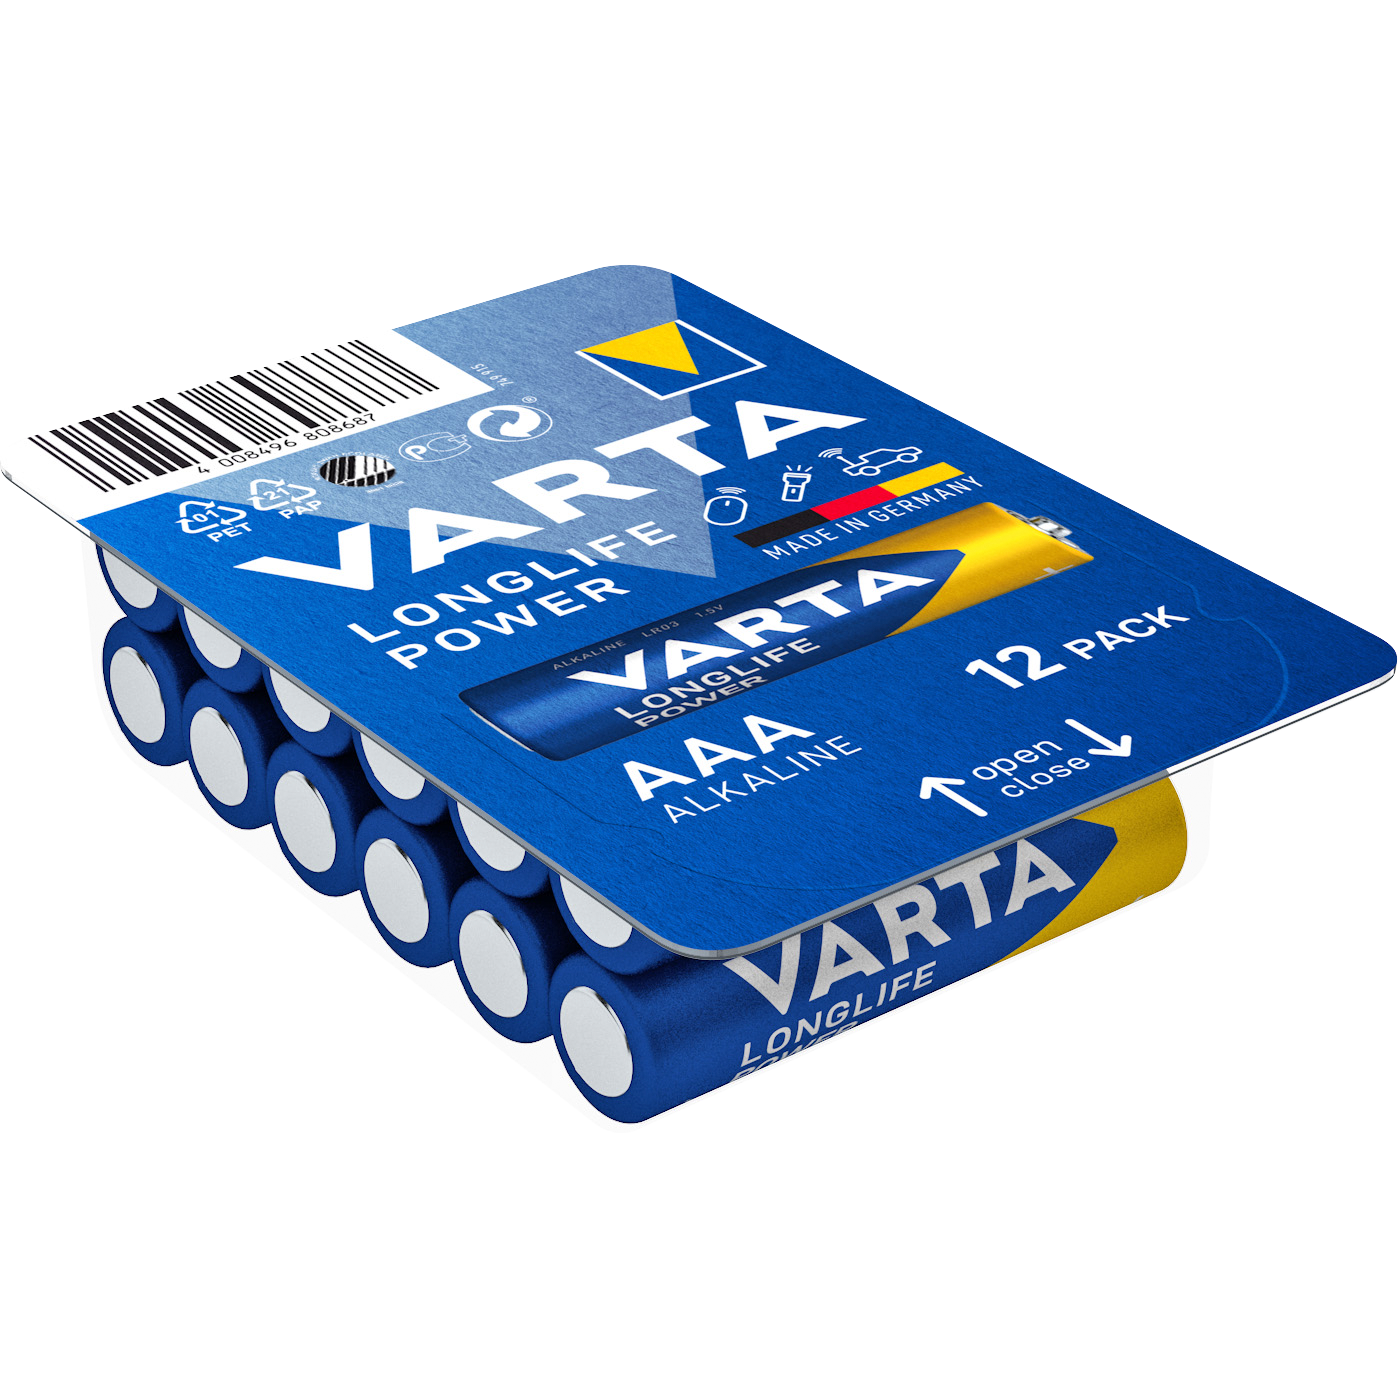 Micro-Batterie VARTA ''Longlife Power'' 1,5V, Typ AAA/LR03, 12er-Pack